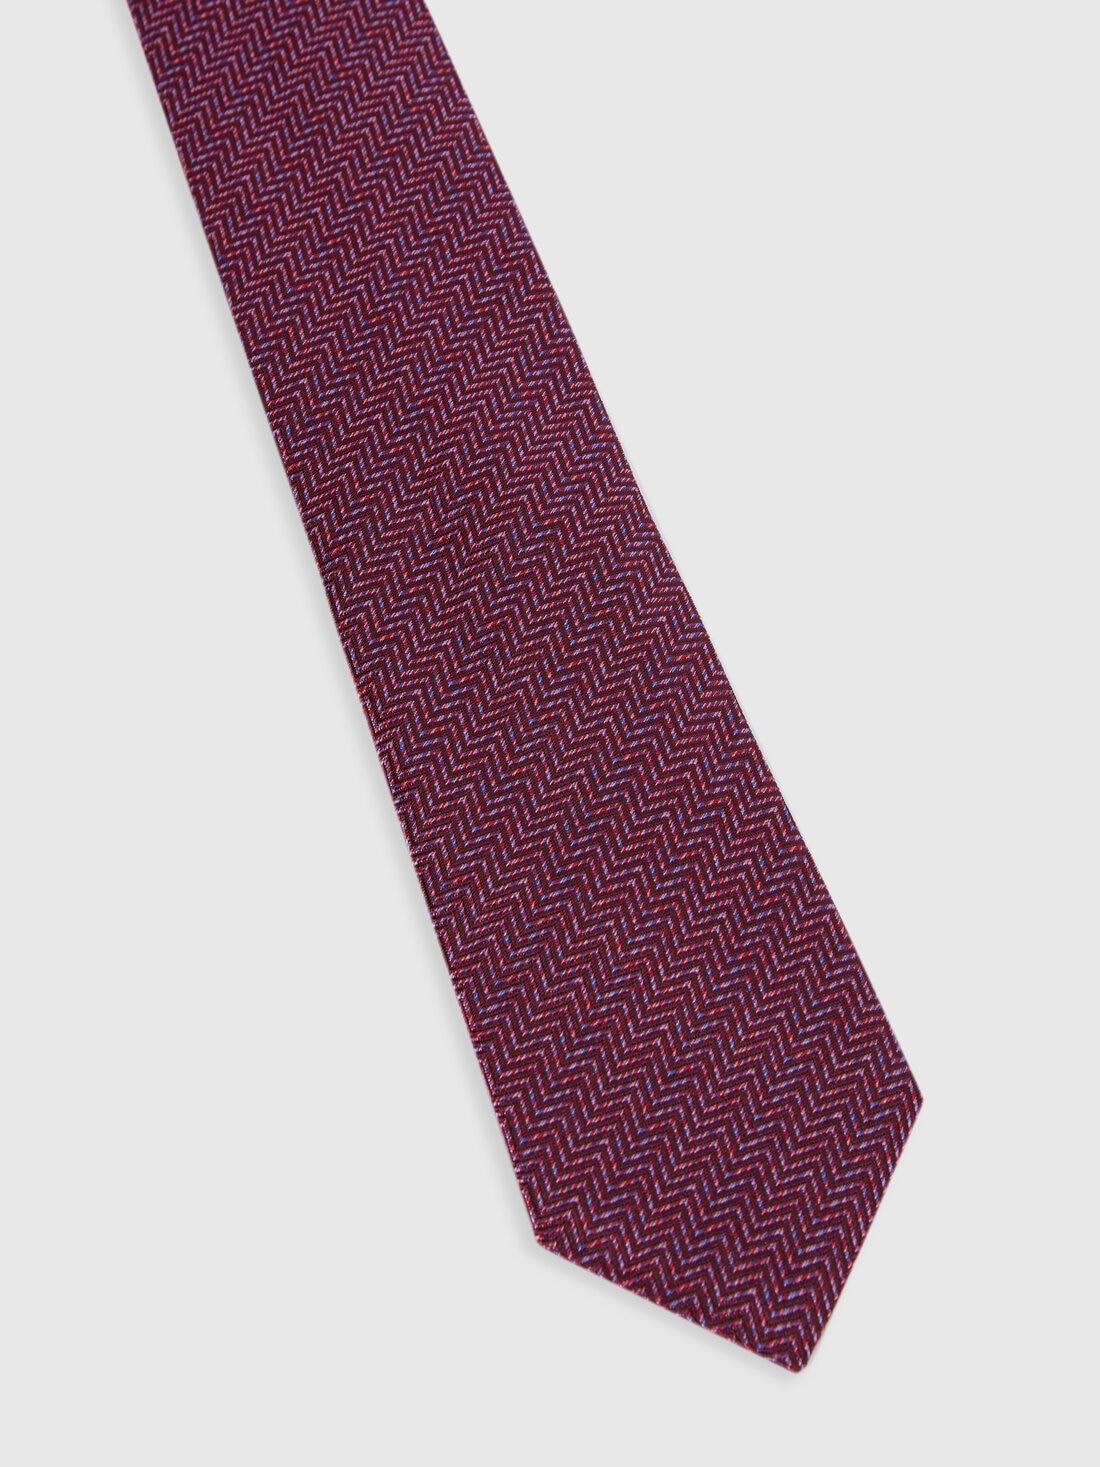 Cravatta in seta chevron, Multicolore  - 8053147141947 - 1